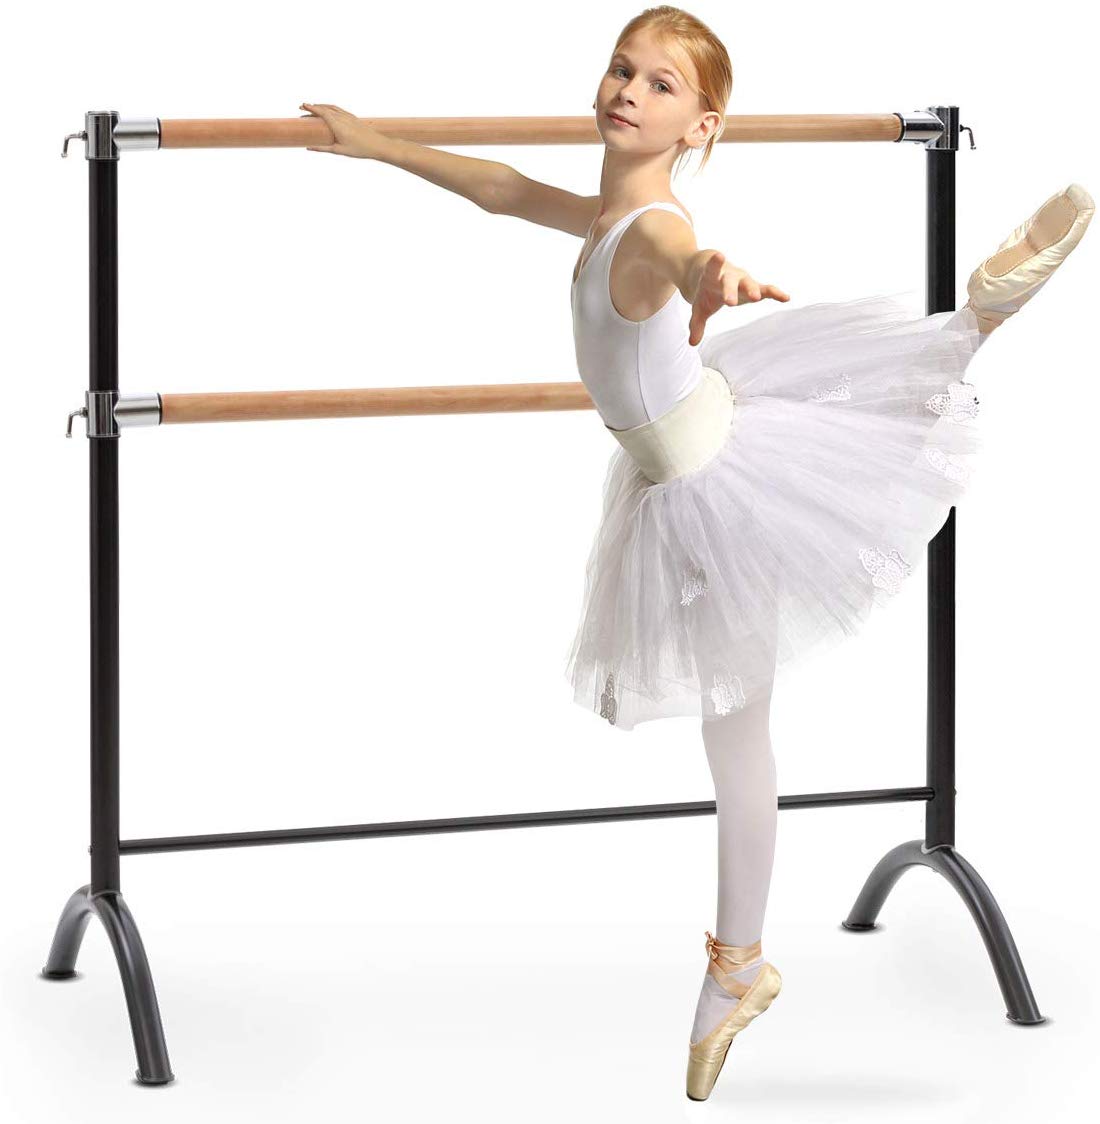 puerta espejo patinar ✓Accesorios de ballet » Ropa y artículos de ballet |ESBALLET.COM